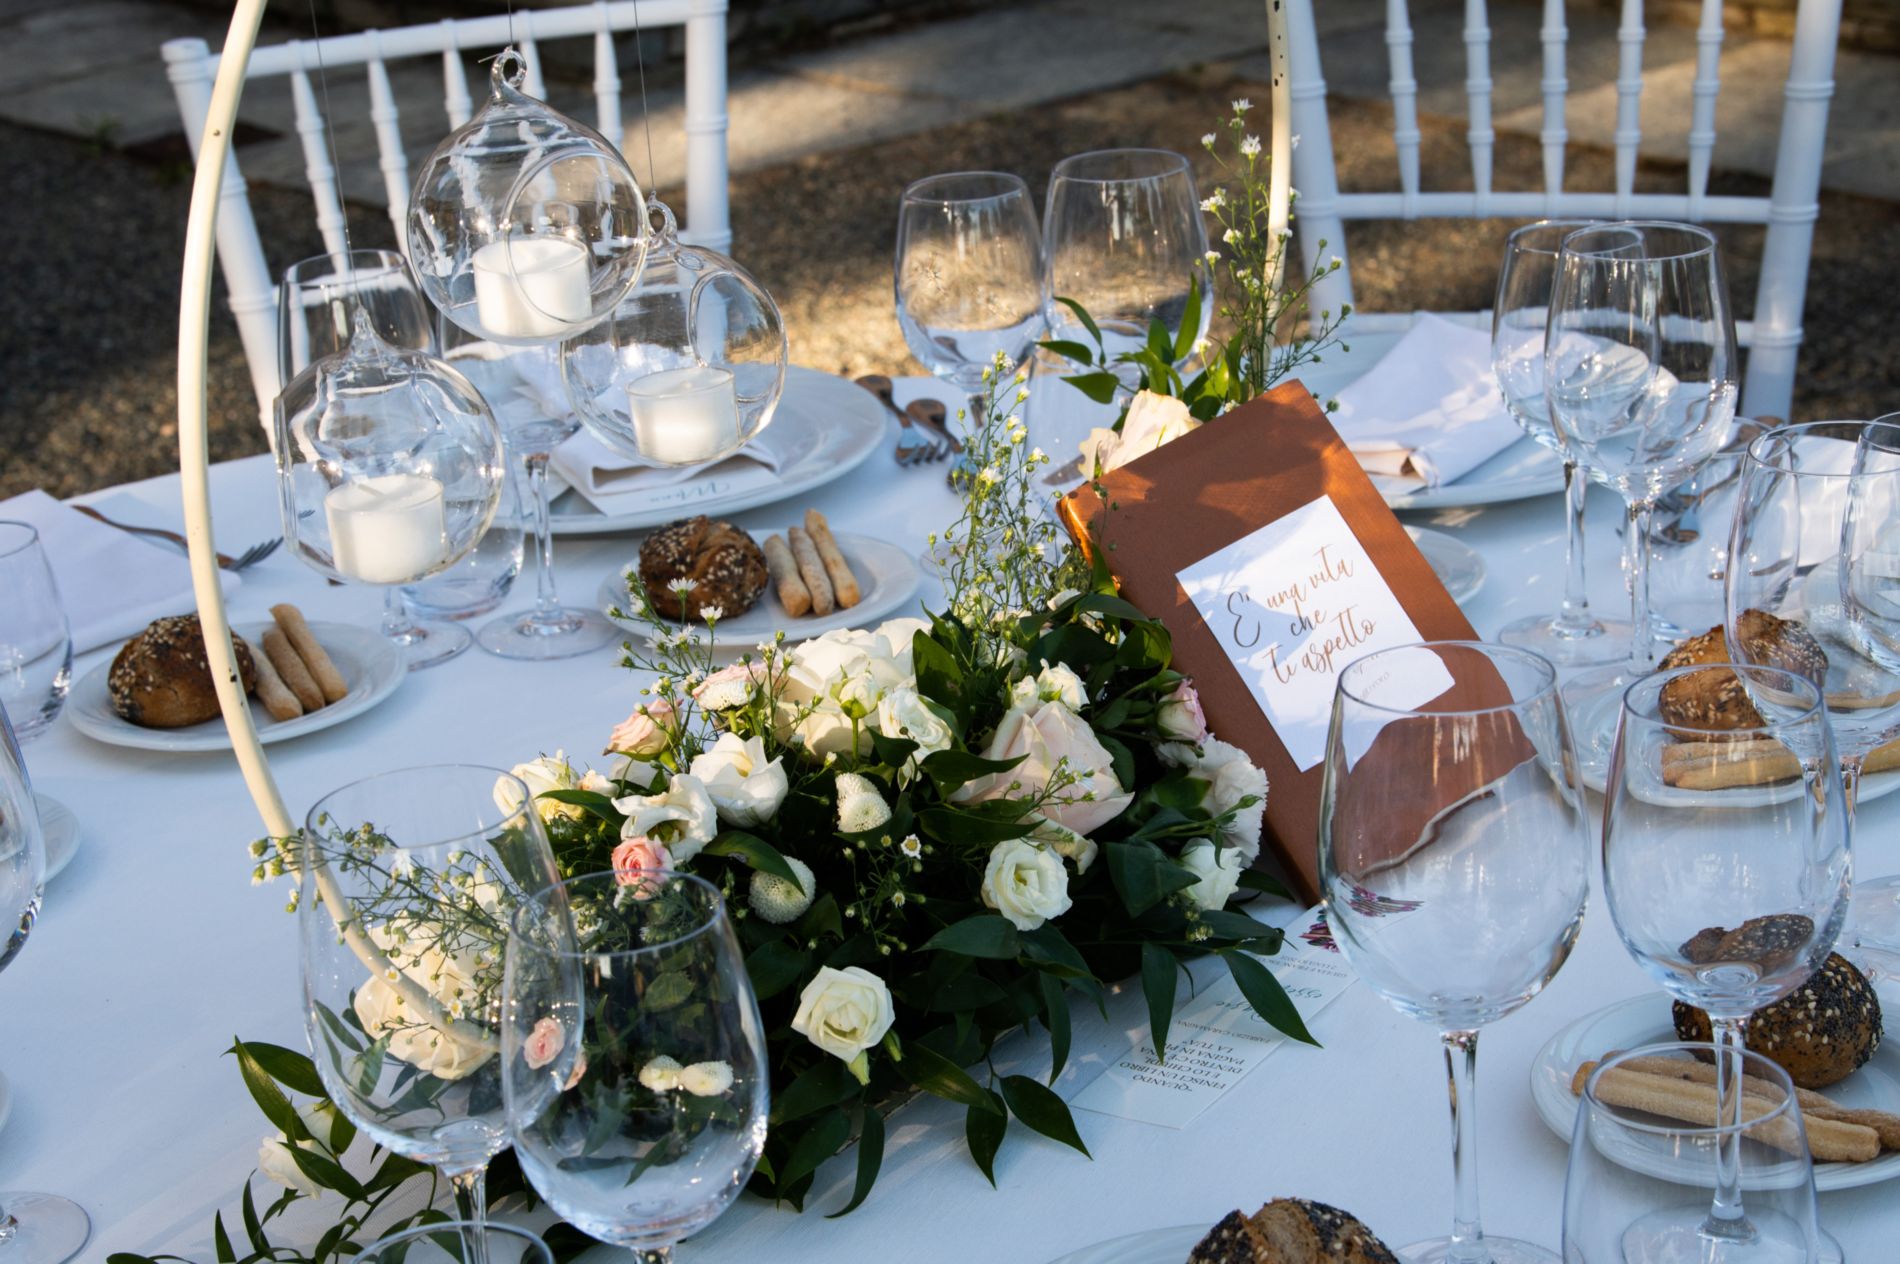 paola casetta – wedding planner – giulia e francesco30